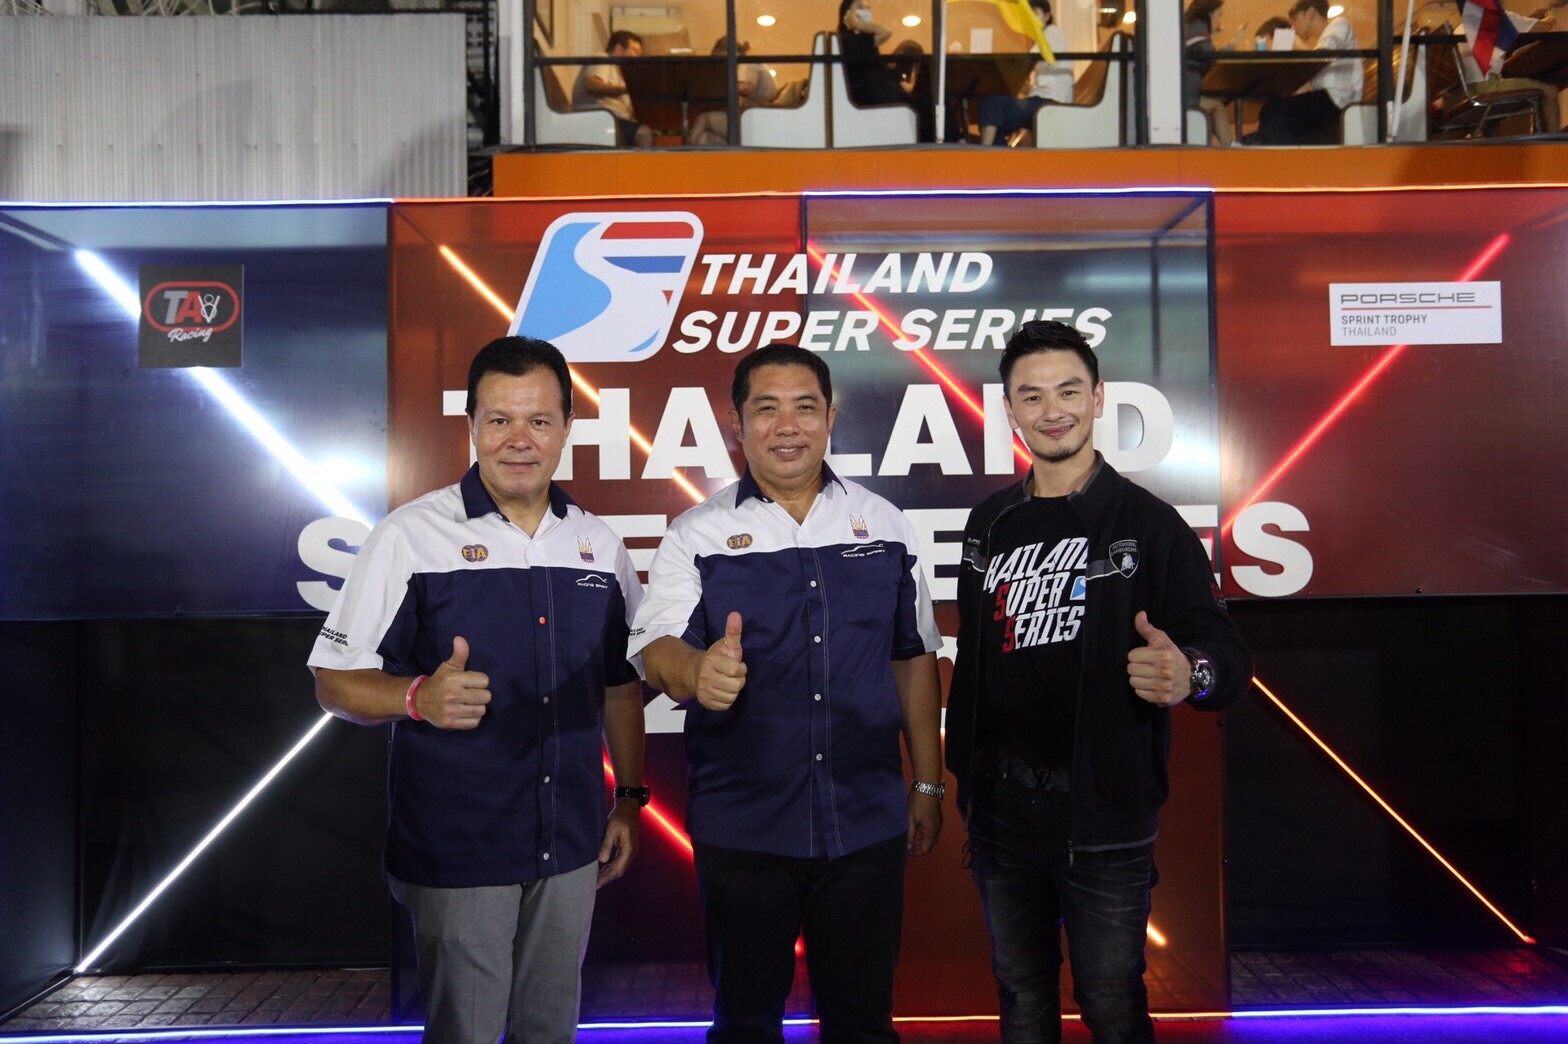 Thailand Super Series เปิดตัวศึก 2020 ยิ่งใหญ่ “ครั้งแรก” ของมอเตอร์สปอร์ตไทย ก้าวสู่ Support Race การแข่งขัน Formula 1 พร้อมเตรียมตัวในฐานะ “เจ้าบ้าน” ต้อนรับรายการแข่งระดับนานาชาติตลอดฤดูกาล